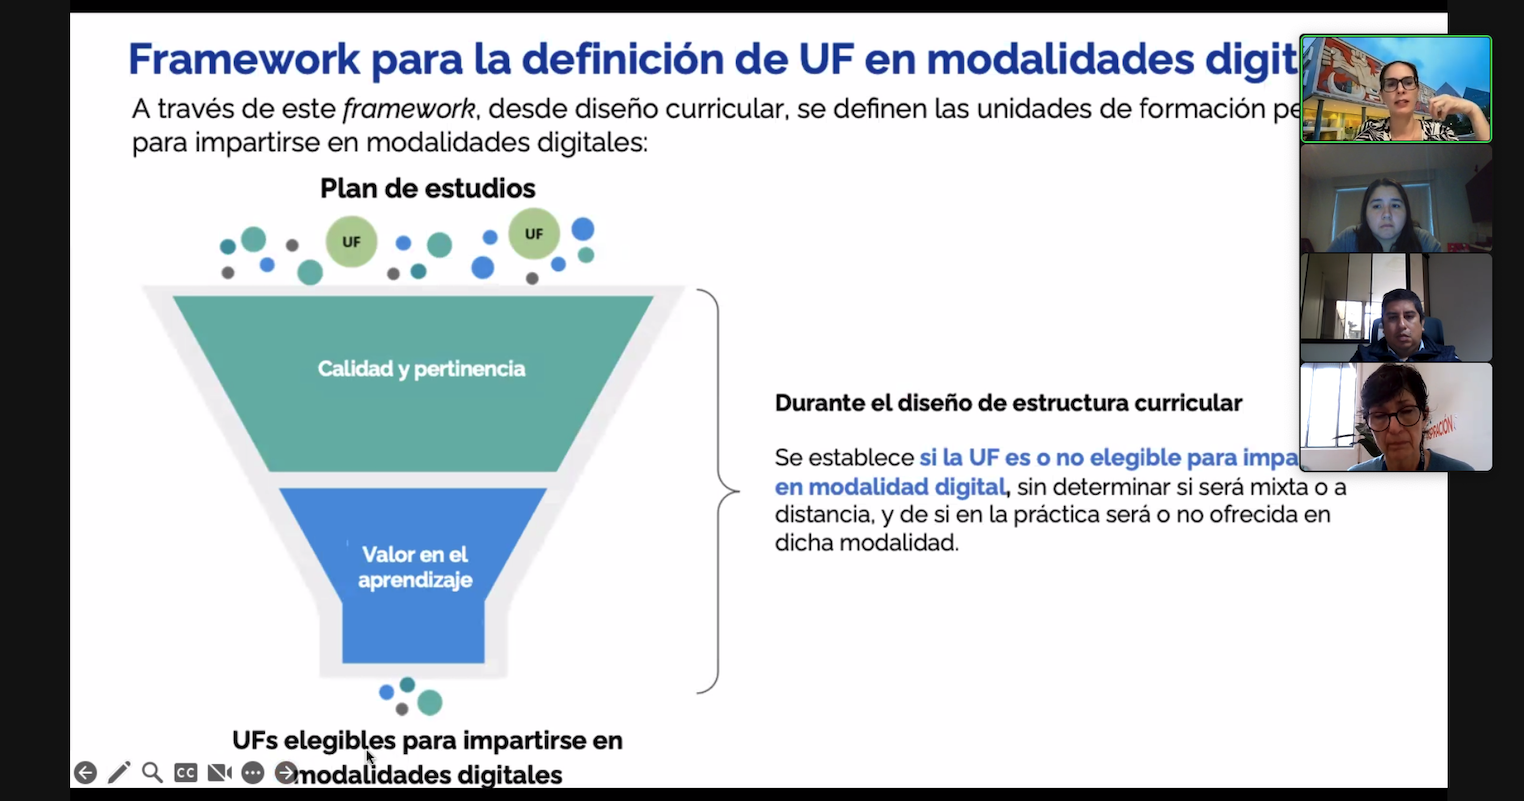 Rafaela Diegoli, Vicerrectora Académica del Instituto Tecnológico y de Estudios Superiores de Monterrey, presentó el marco que la institución ha trabajado para definir qué contenidos se puede ofrecer de manera digital.